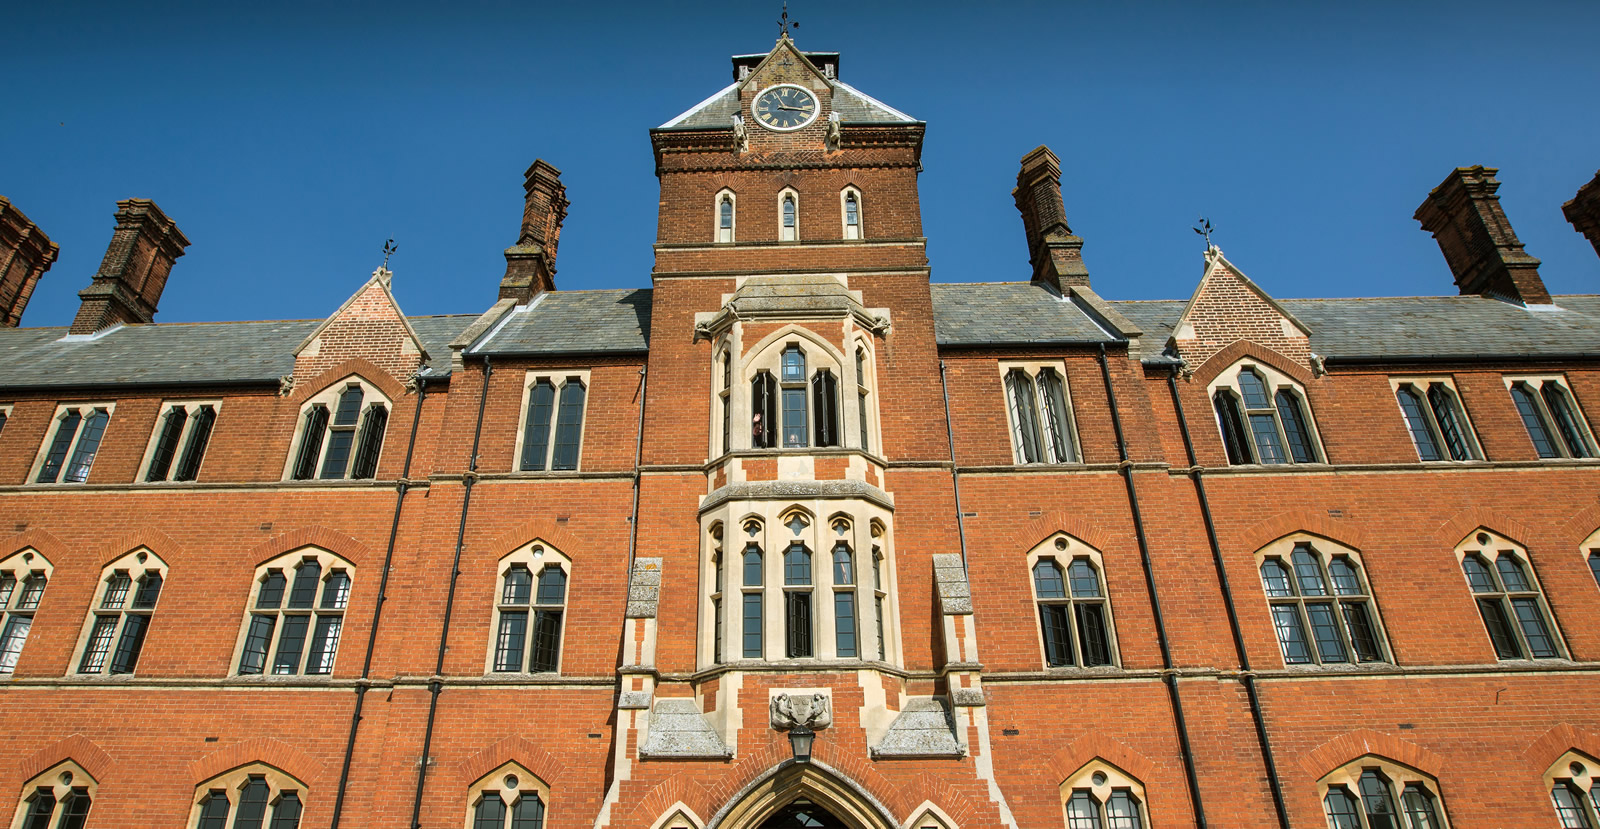 Academic Buildings - Framlingham College, Suffolk